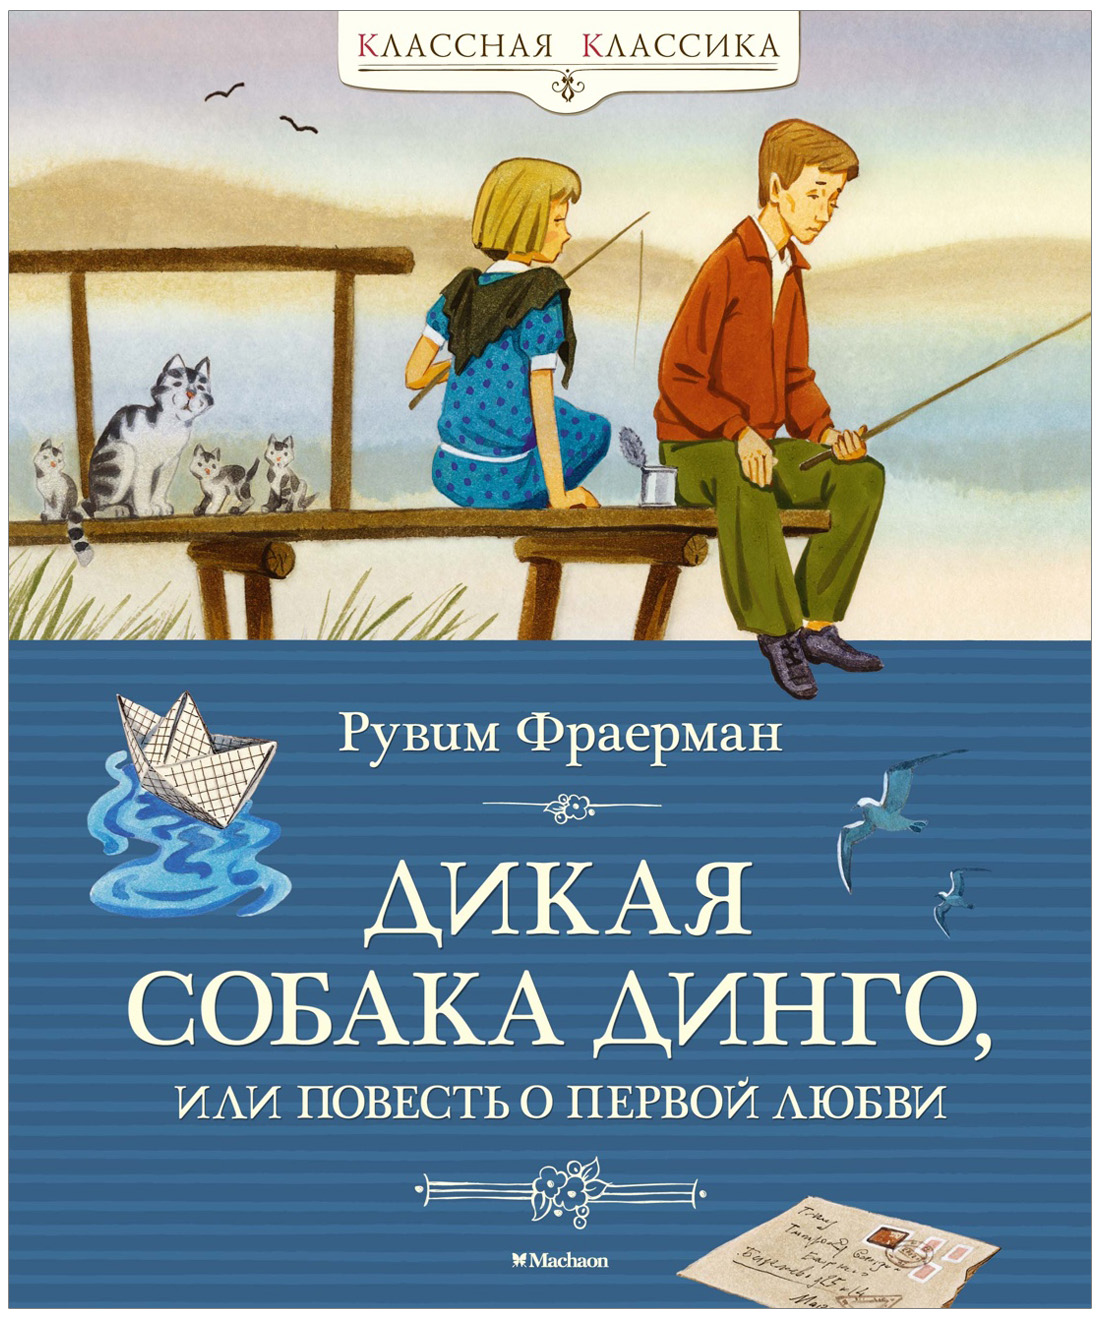 arnoldrak-spb.ru - Бесплатная Онлайн Библиотека | Читать Книги Онлайн Бесплатно и без регистрации